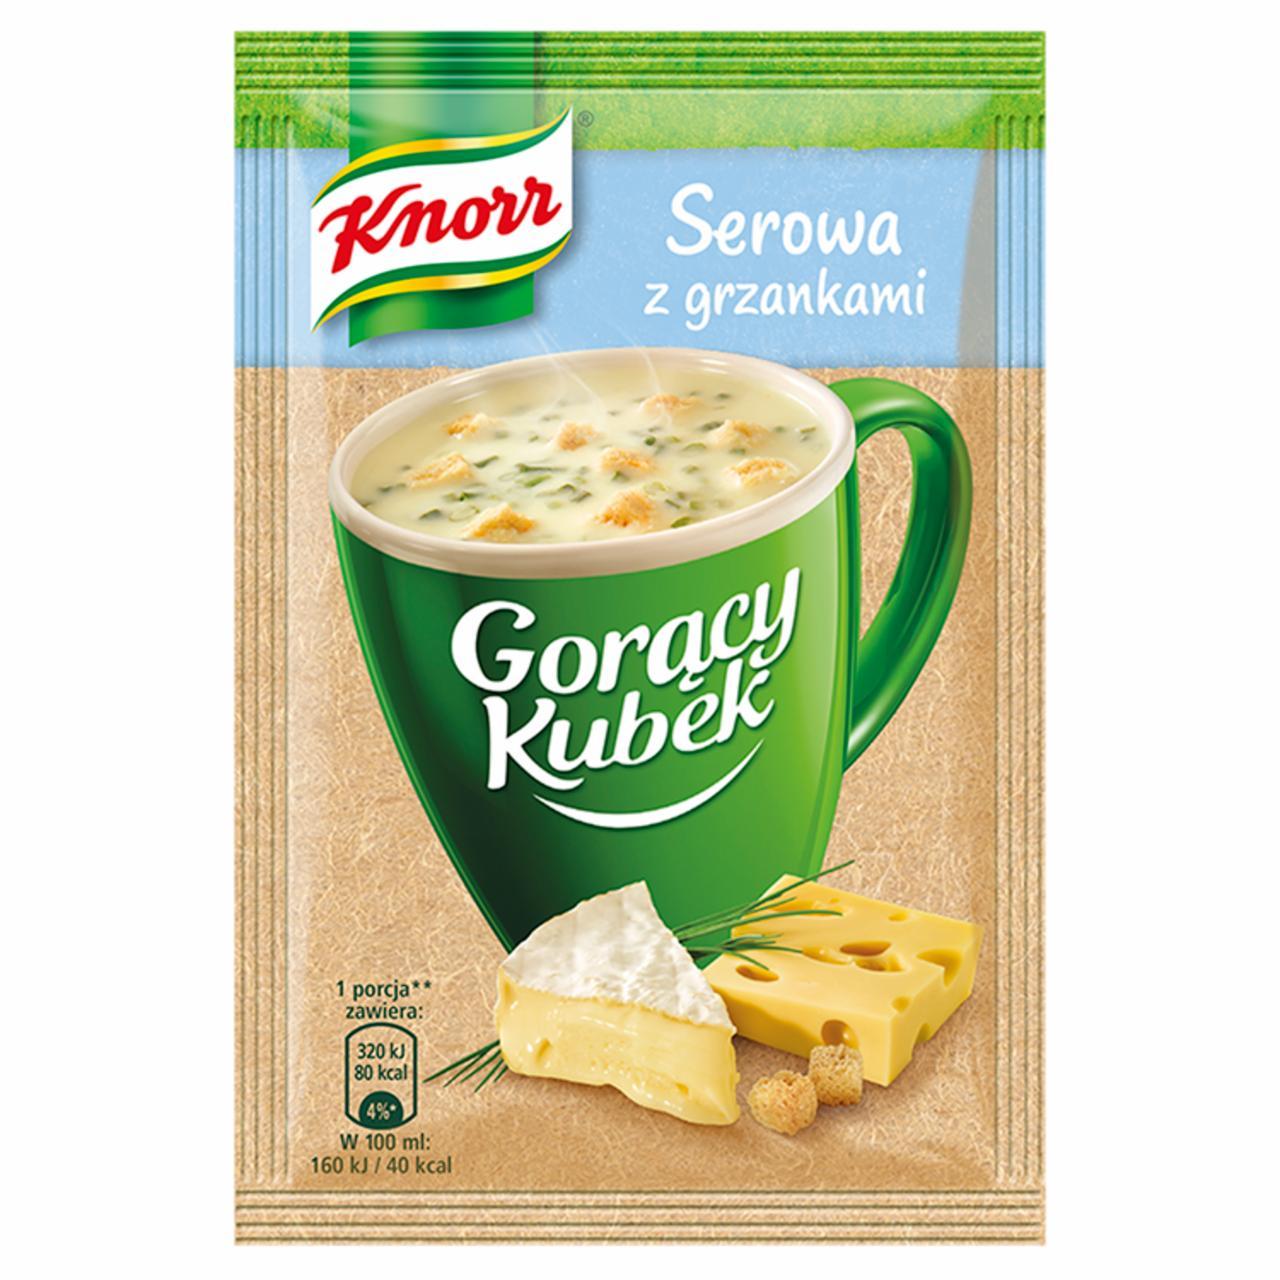 Zdjęcia - Knorr Gorący Kubek Serowa z grzankami 22 g